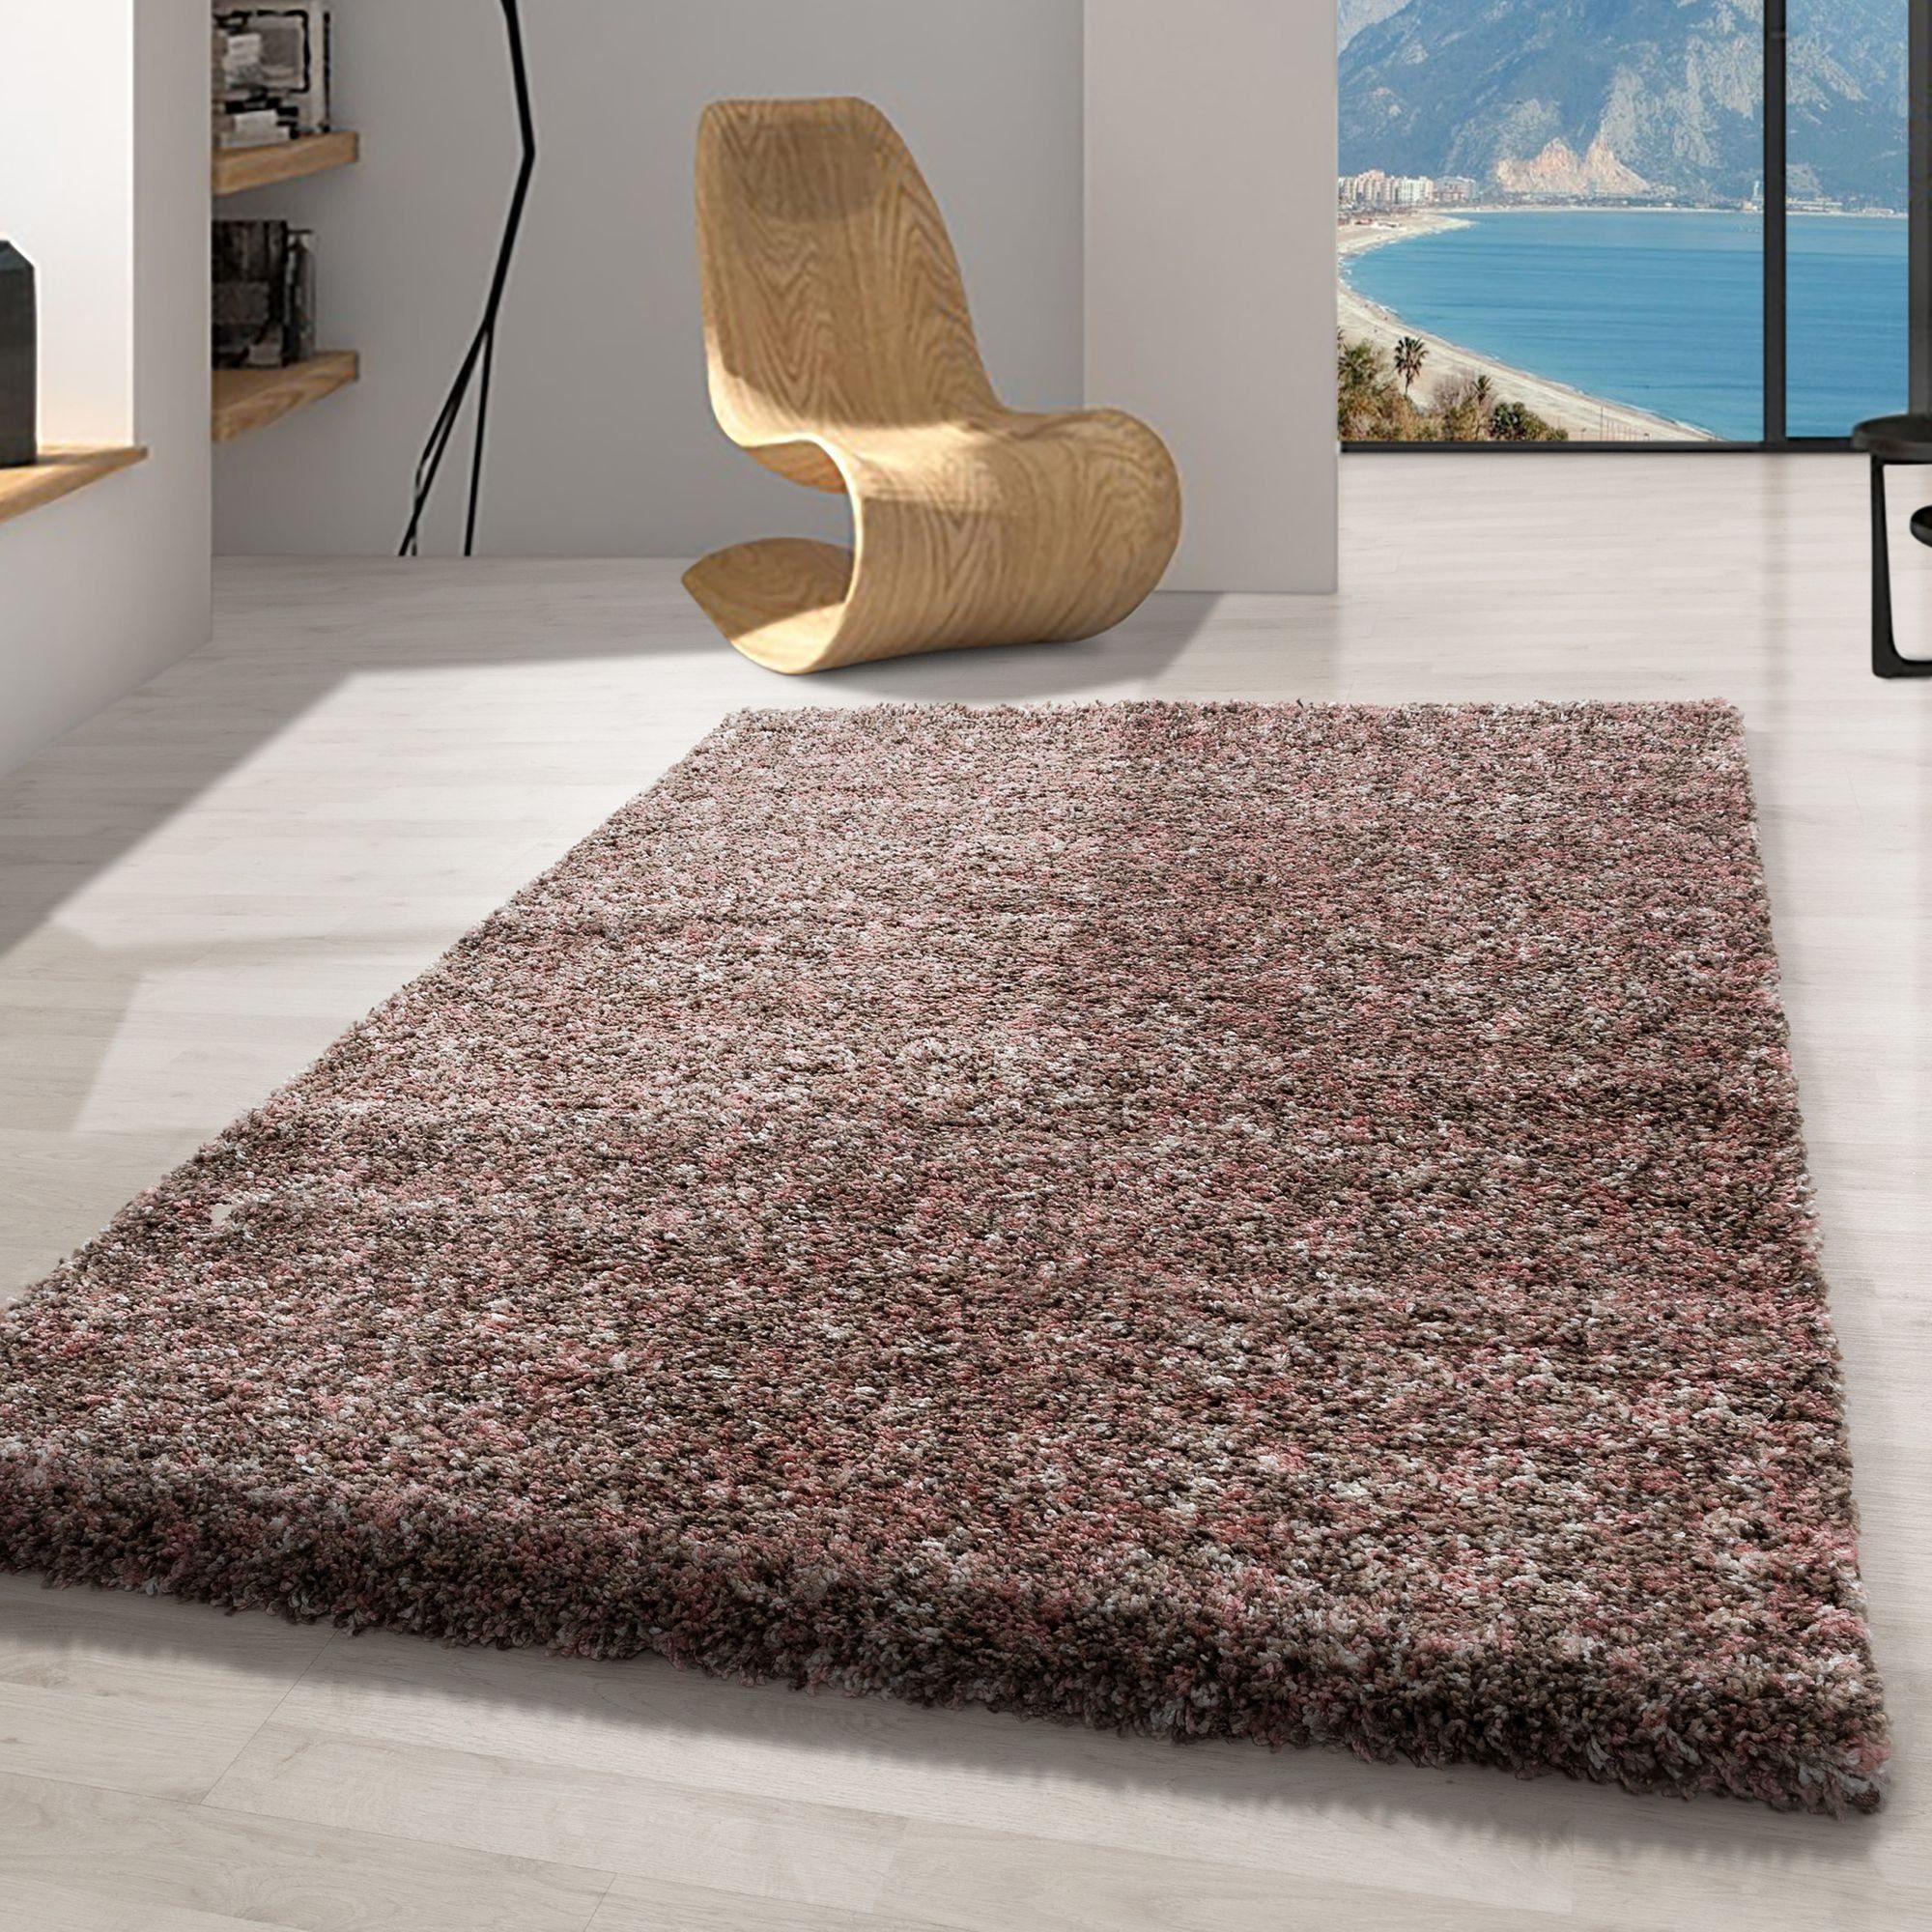 Hochflor-Teppich Meliert Design, Carpetsale24, Meliert 30 Design Rosa-2 versch. Teppich und größen Höhe: farben mm, Teppich Wohnzimmer Läufer